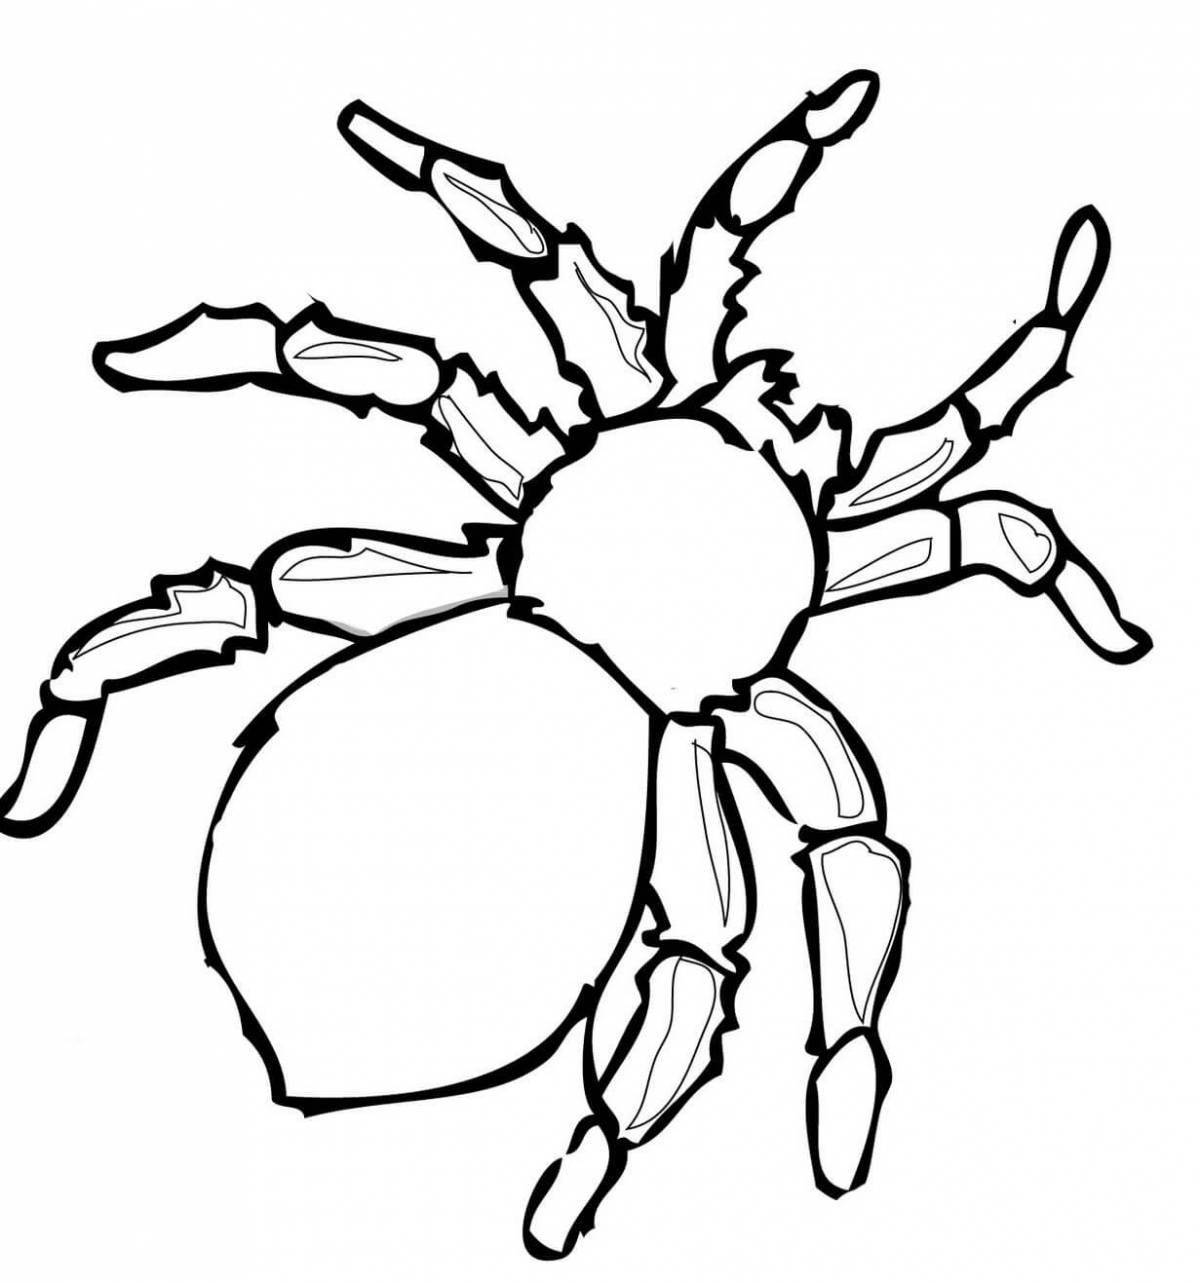 Coloring page shining spider tarantula